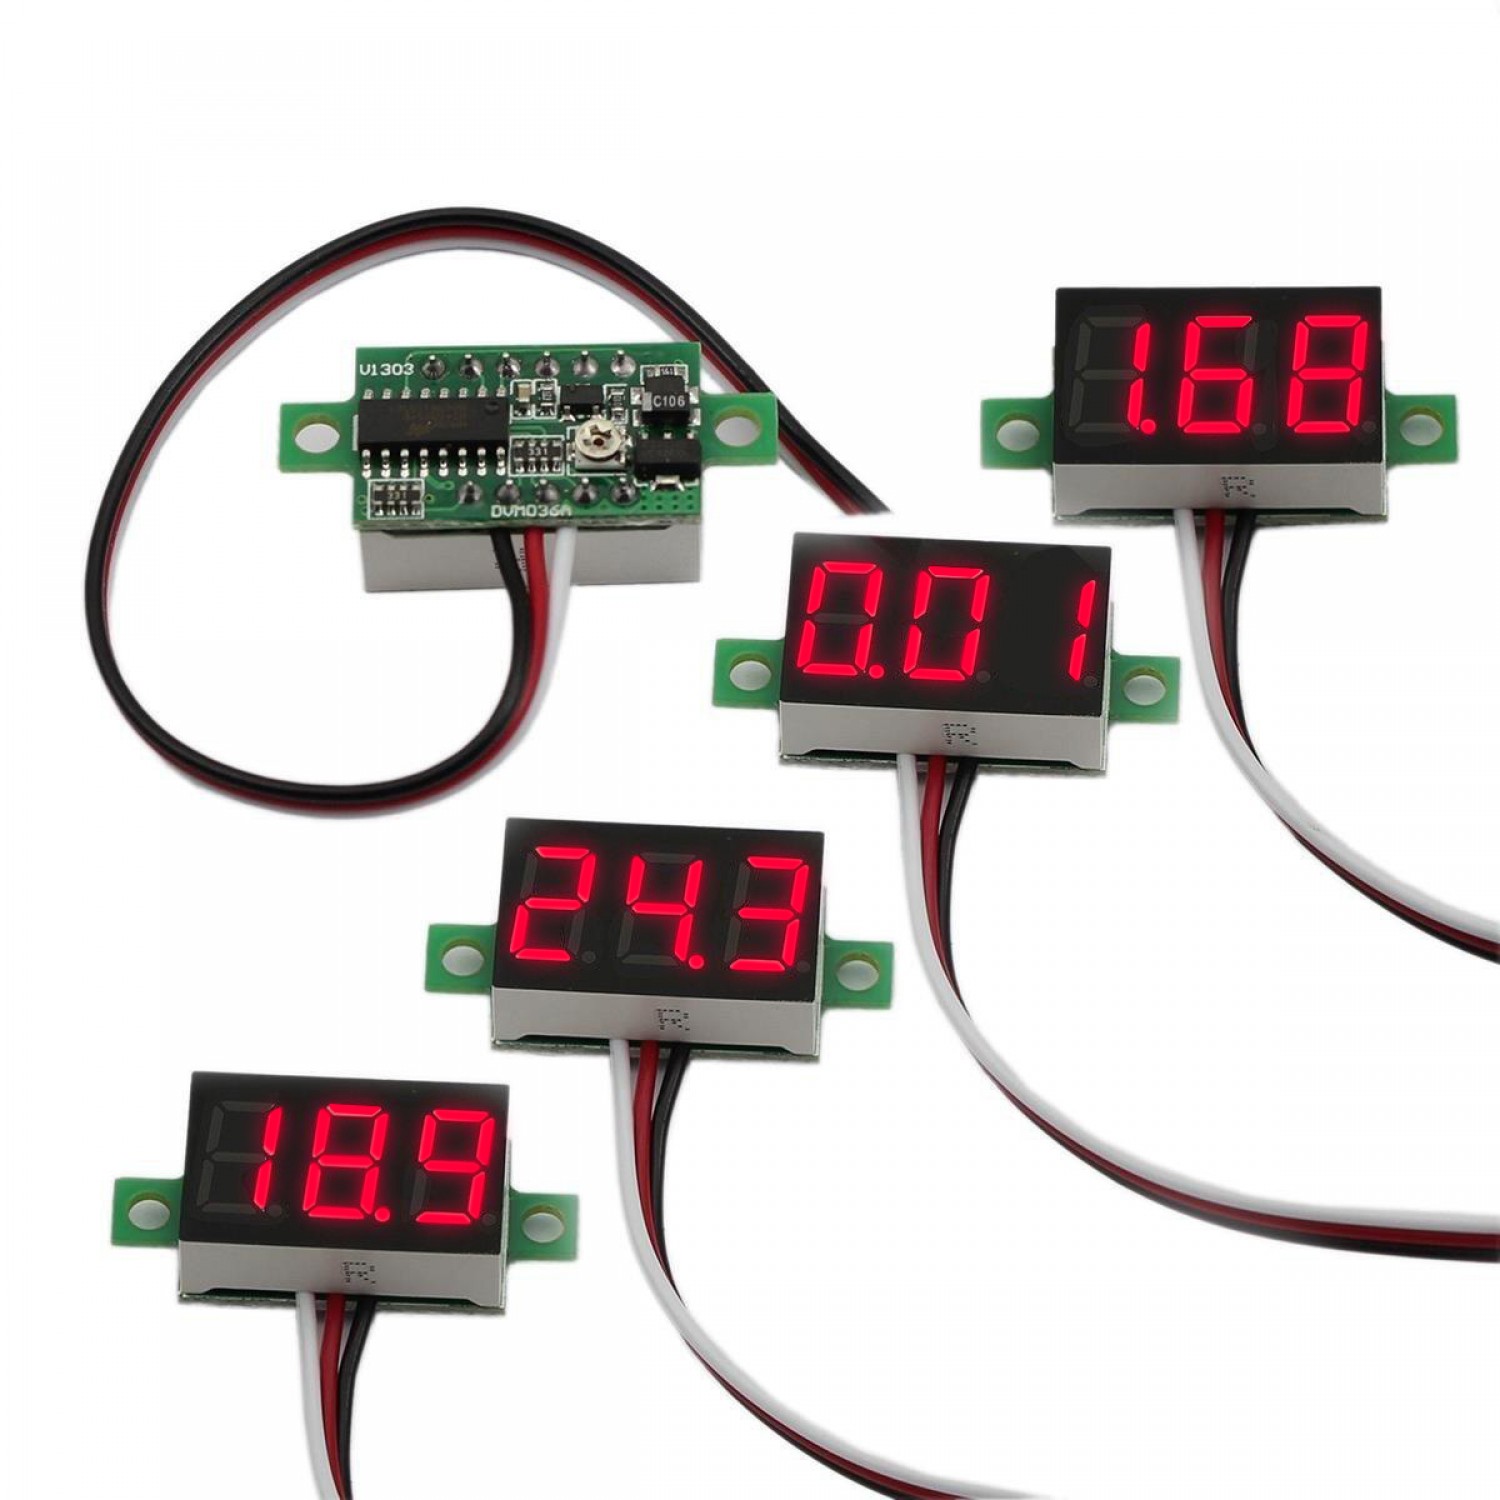 Motorcycle Voltmeter DC 12V Digital Voltmeter Gauge LED Display Voltage Meter for Motorcycle Car Battery Voltage Monitor-Red Upgraded Version Kinstecks